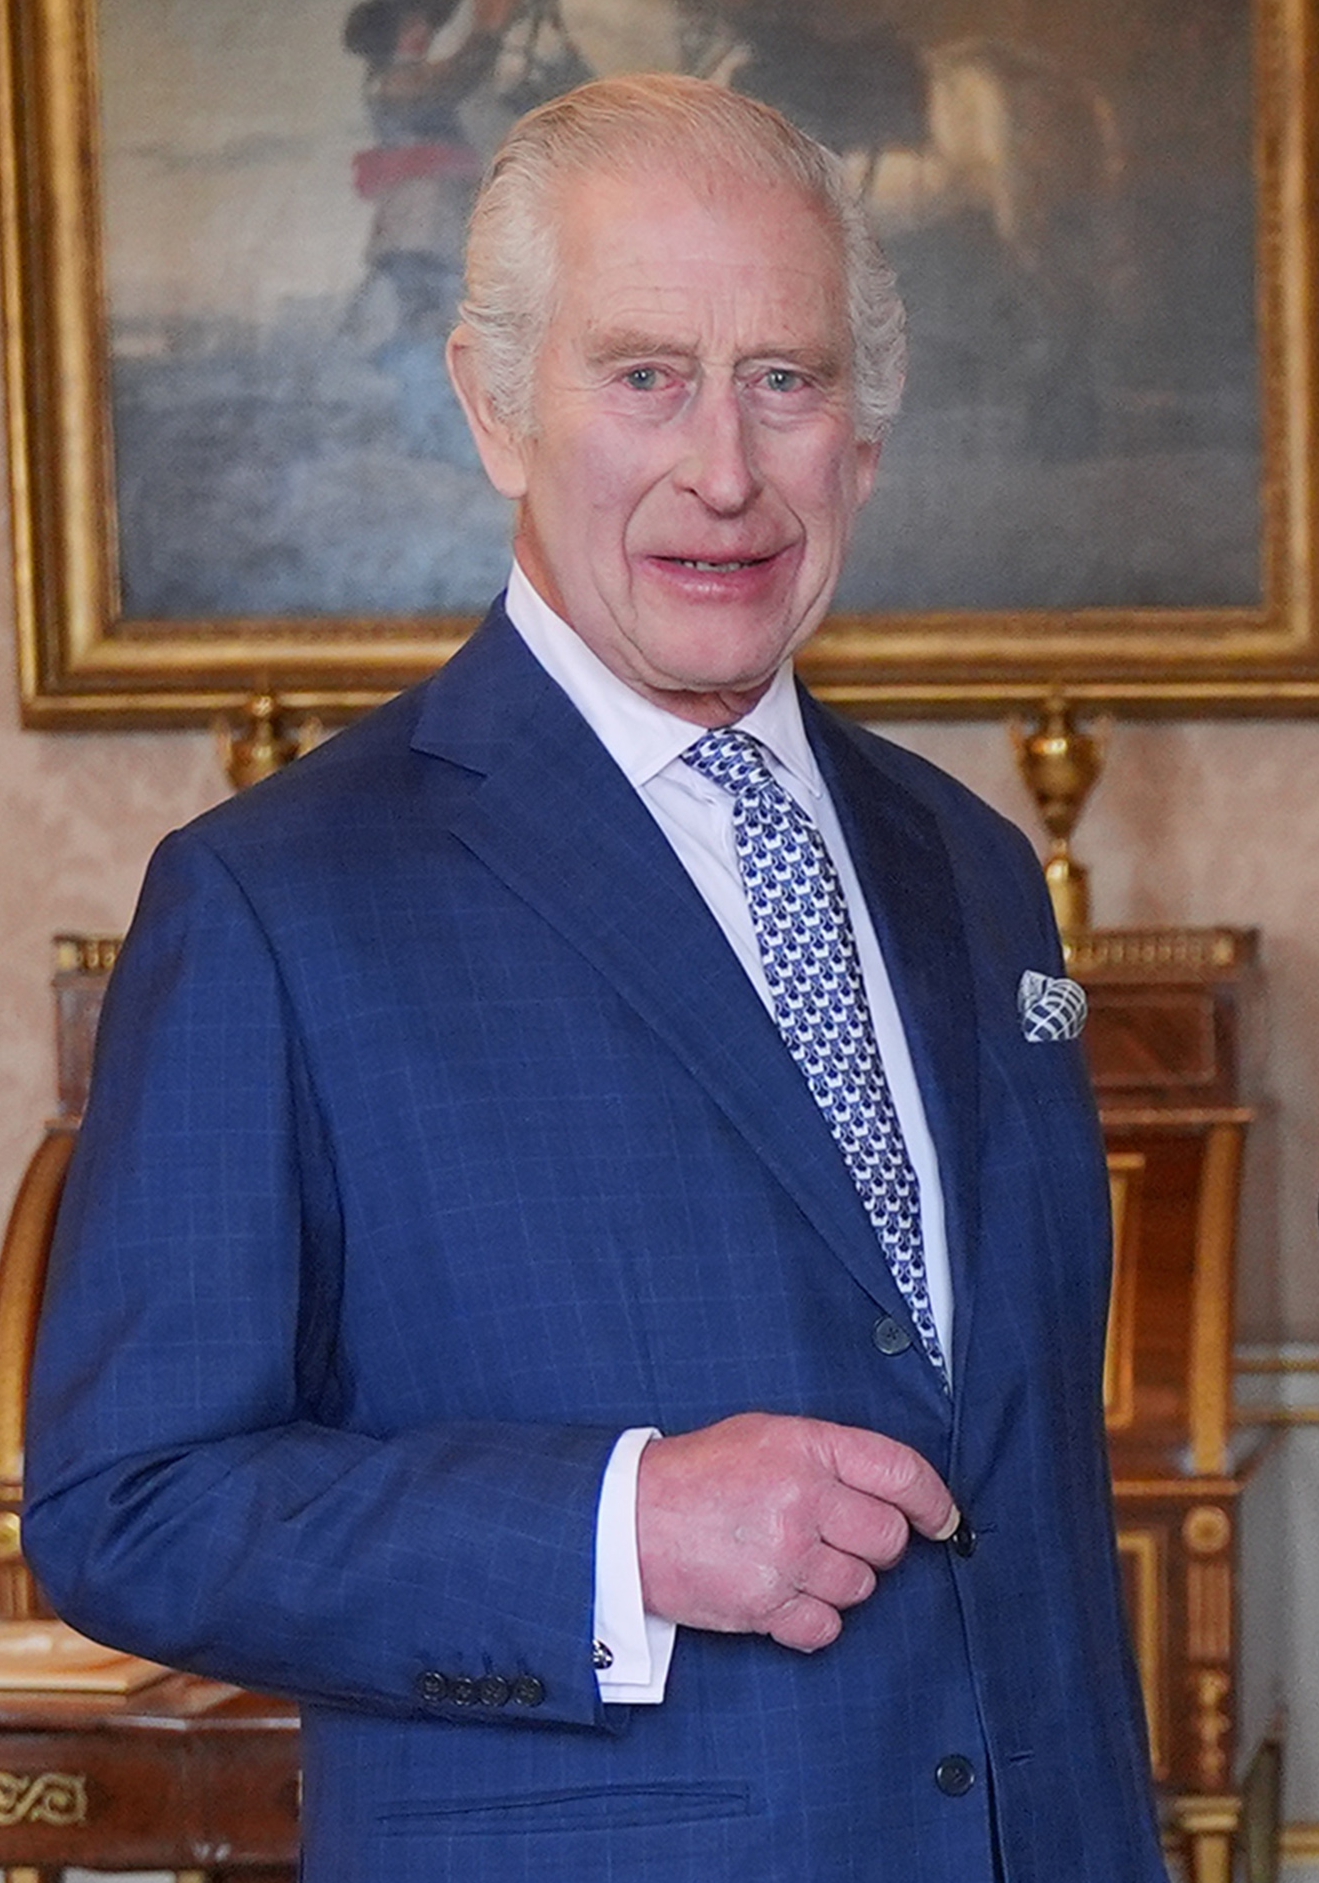   Le roi Charles a ouvert le château au public